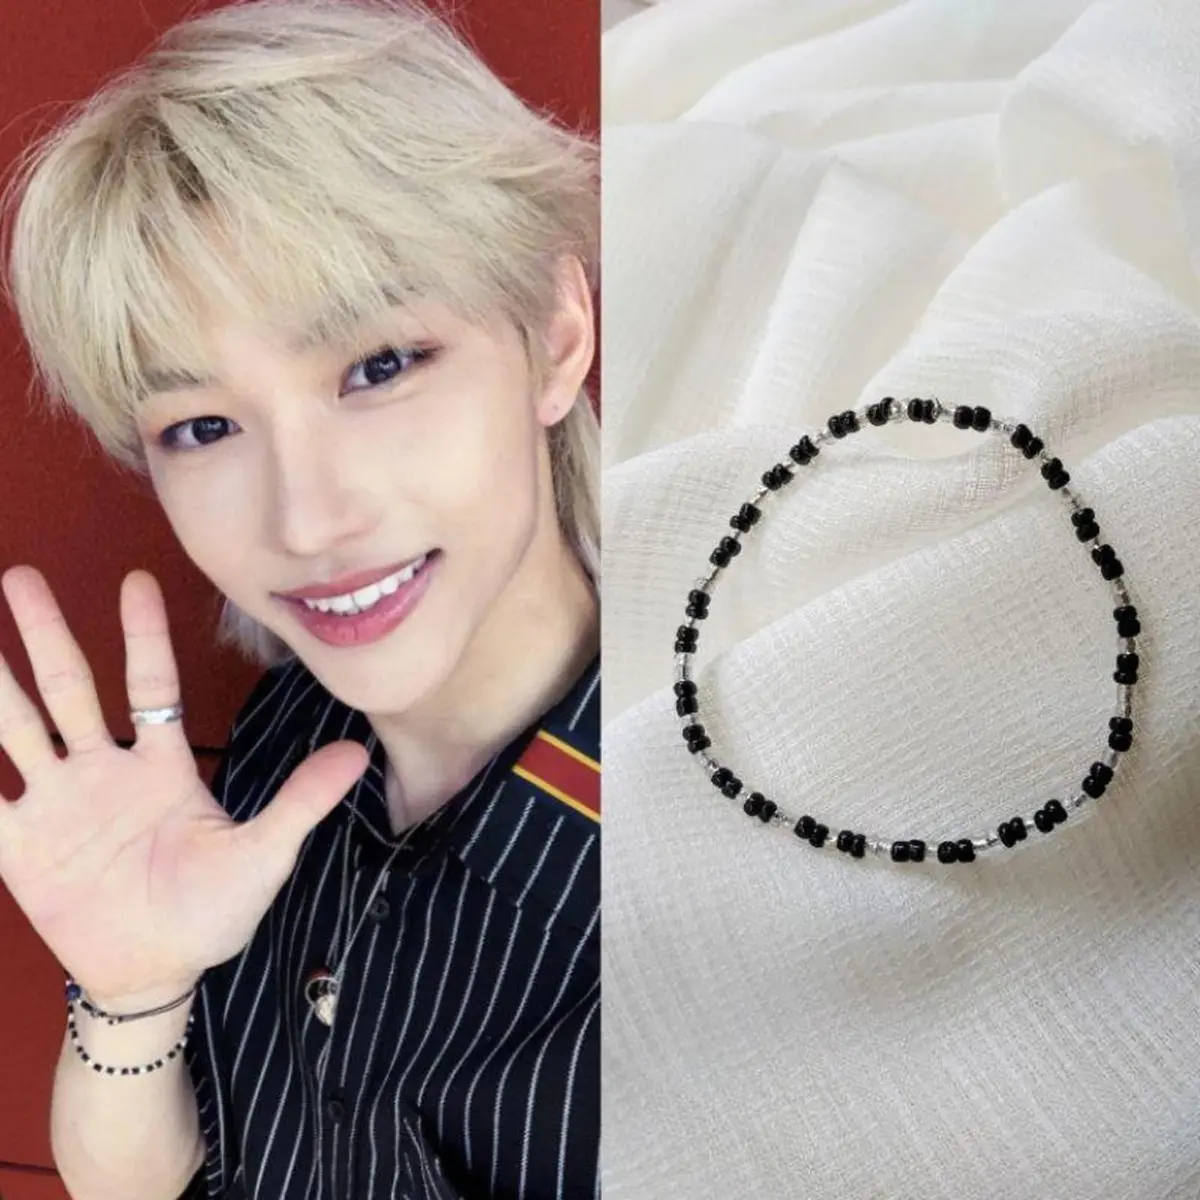 Jin Bead Bracelet Kpop Kandi Bracelet Jin Inspired Jewelry - Etsy